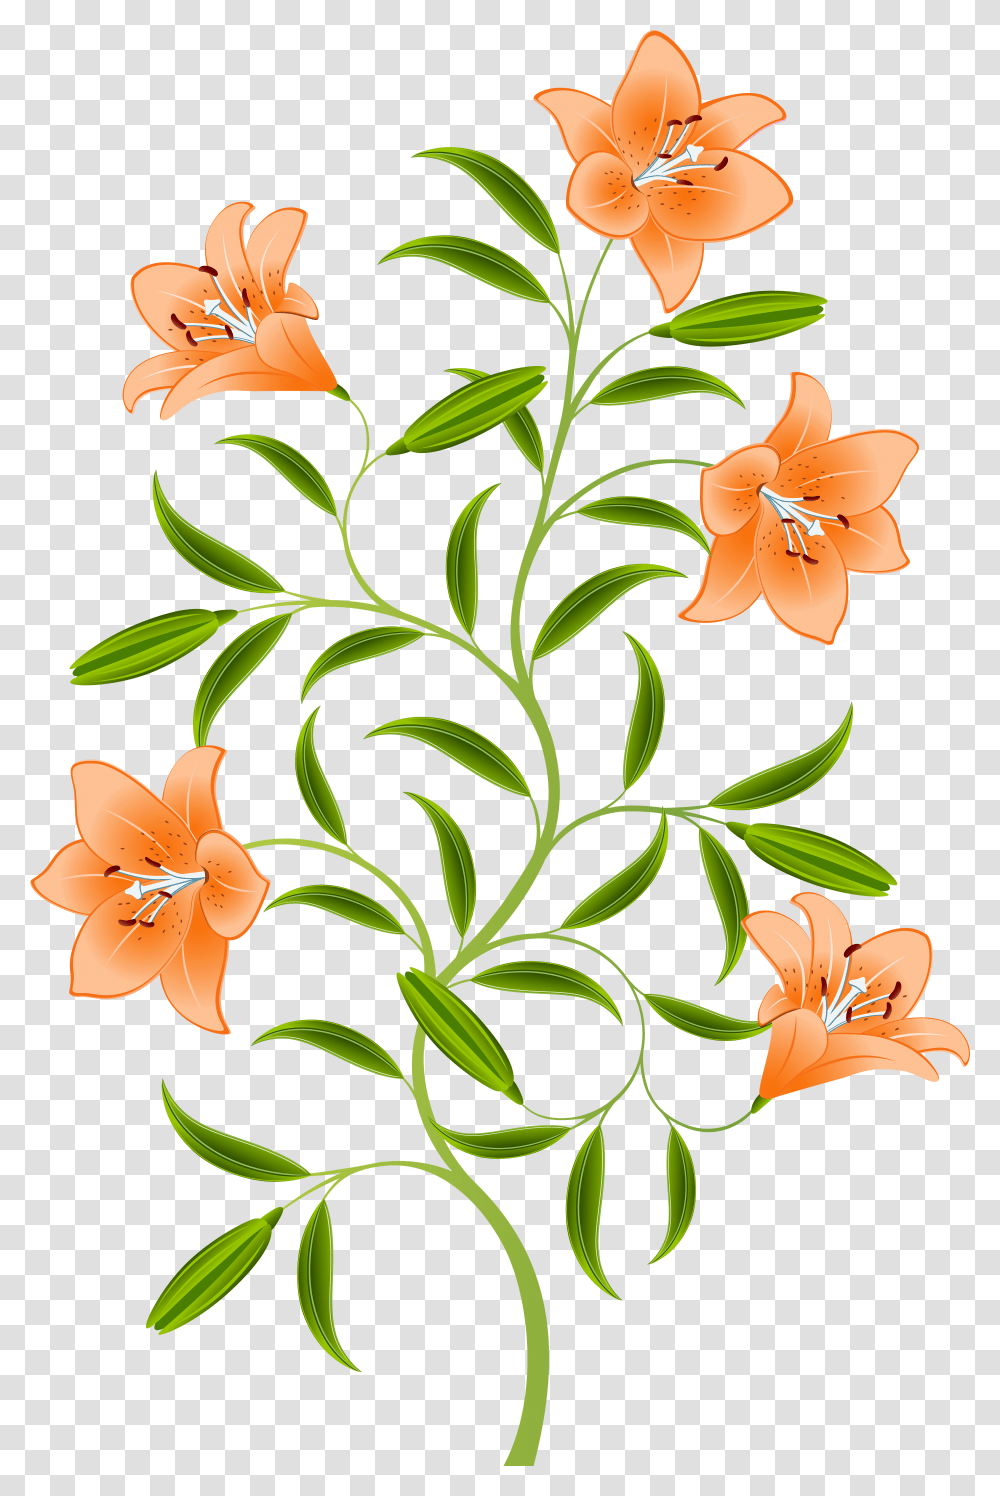 Orange Lily Images Background Tiger Lily Transparent Png